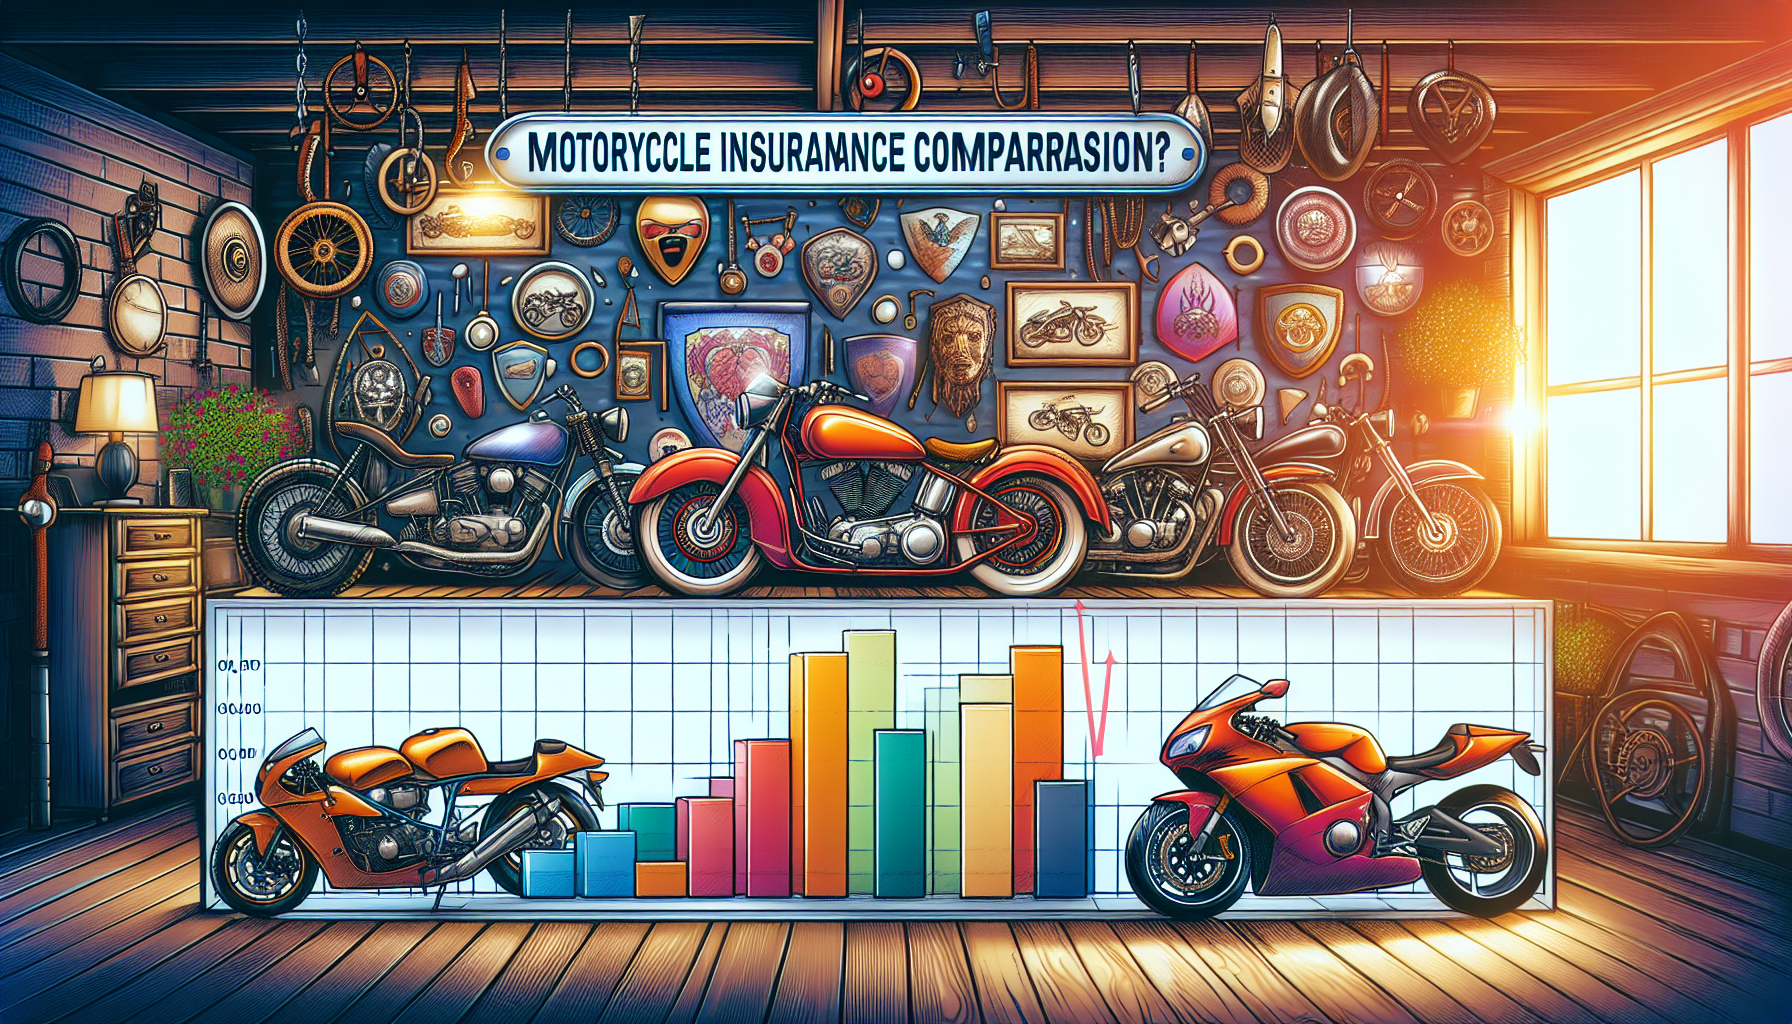 découvrez comment choisir la meilleure assurance moto 97420 en utilisant un comparateur. trouvez la couverture parfaite pour votre moto dans la région 97420.